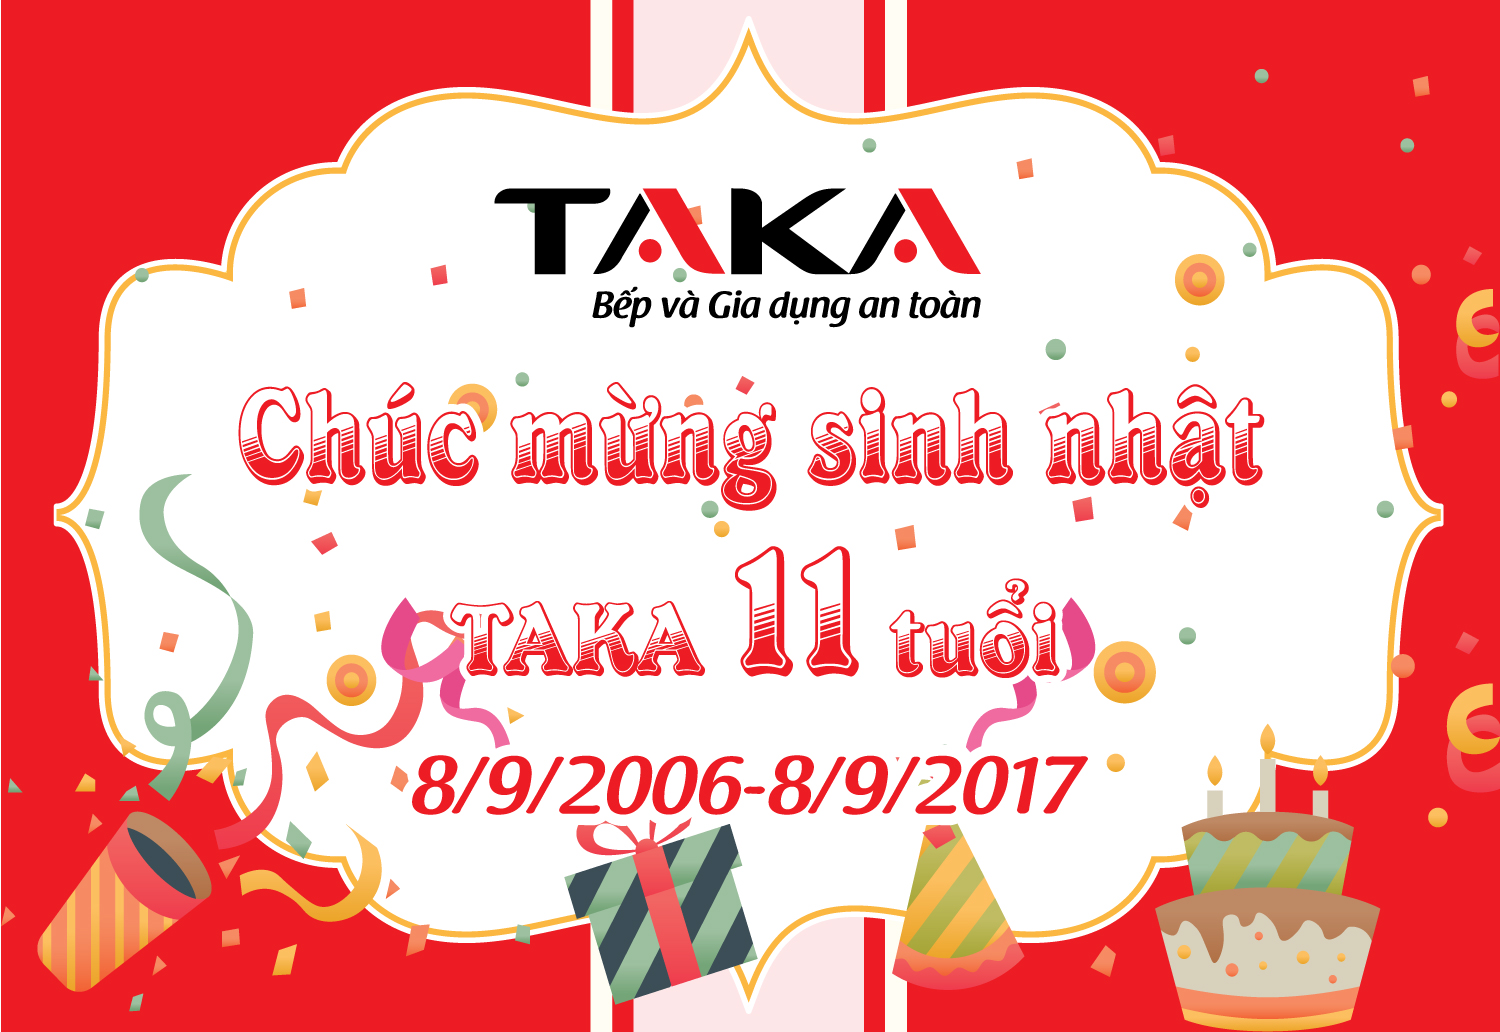 Chúc mừng sinh nhật Taka tròn 11 tuổi